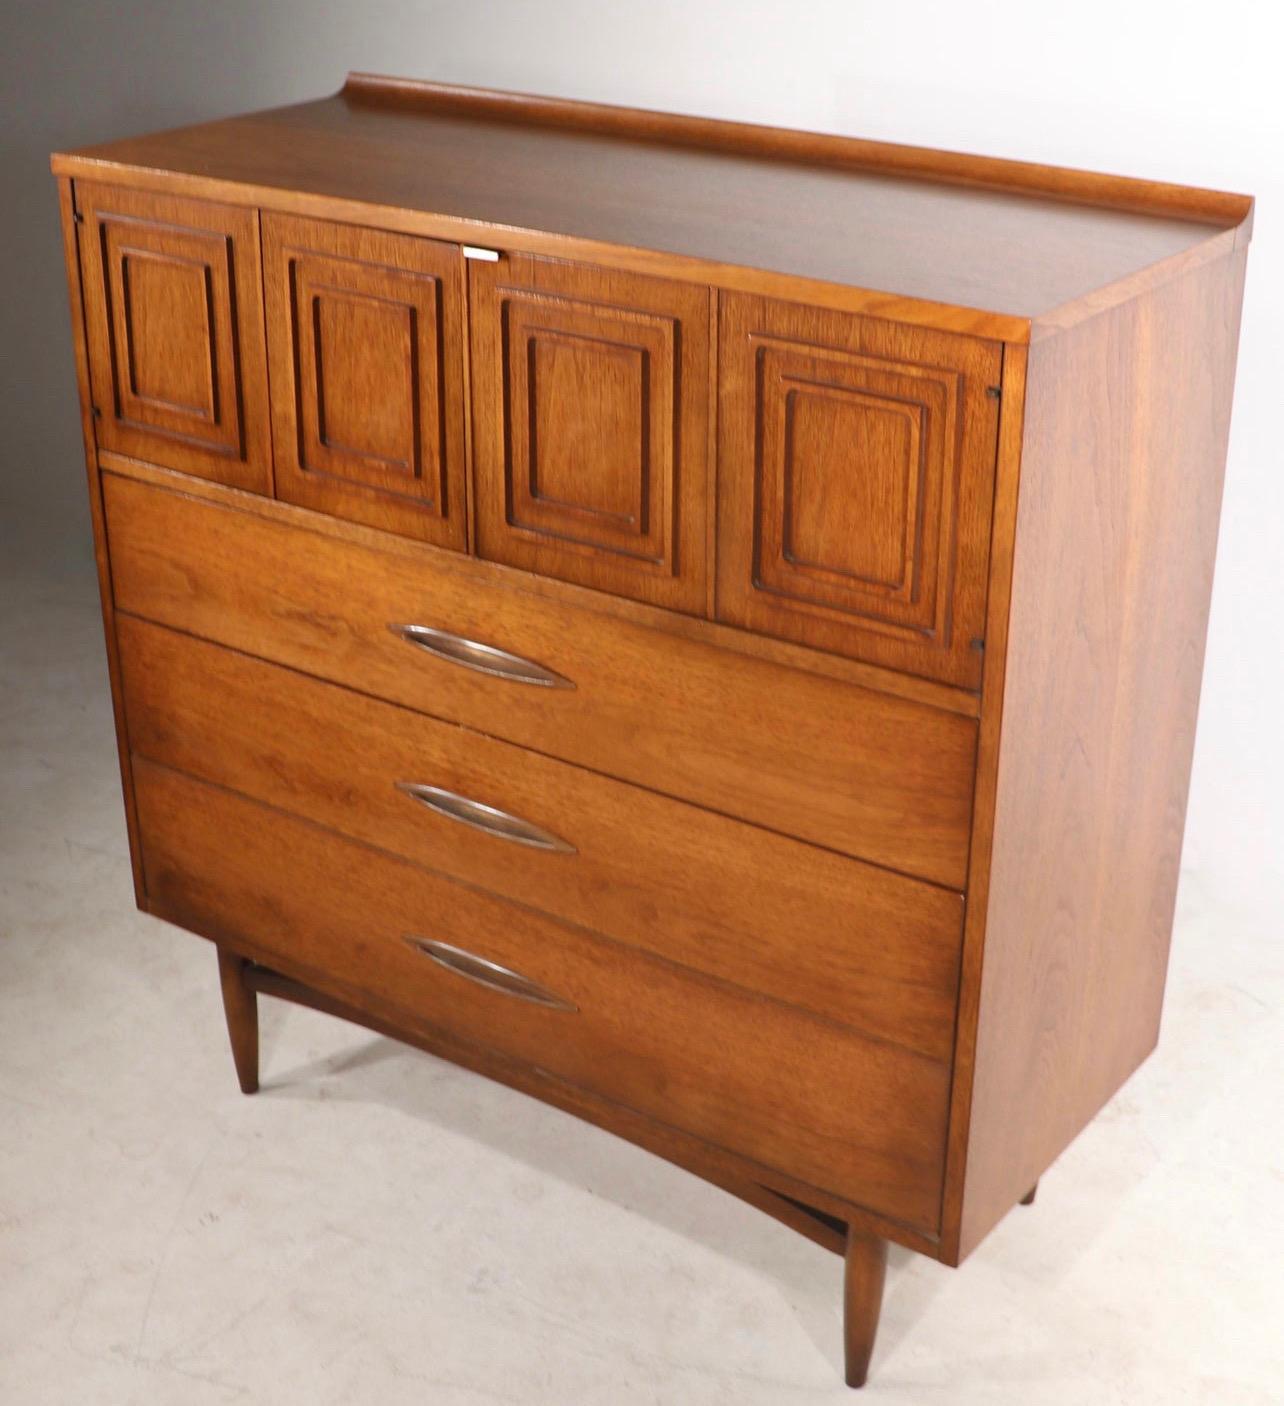 Commode Vintage Mid-Century Modern avec tiroirs à queue d'aronde, armoire de rangement

Dimensions. 42 L ; 43 H ; 17 P.